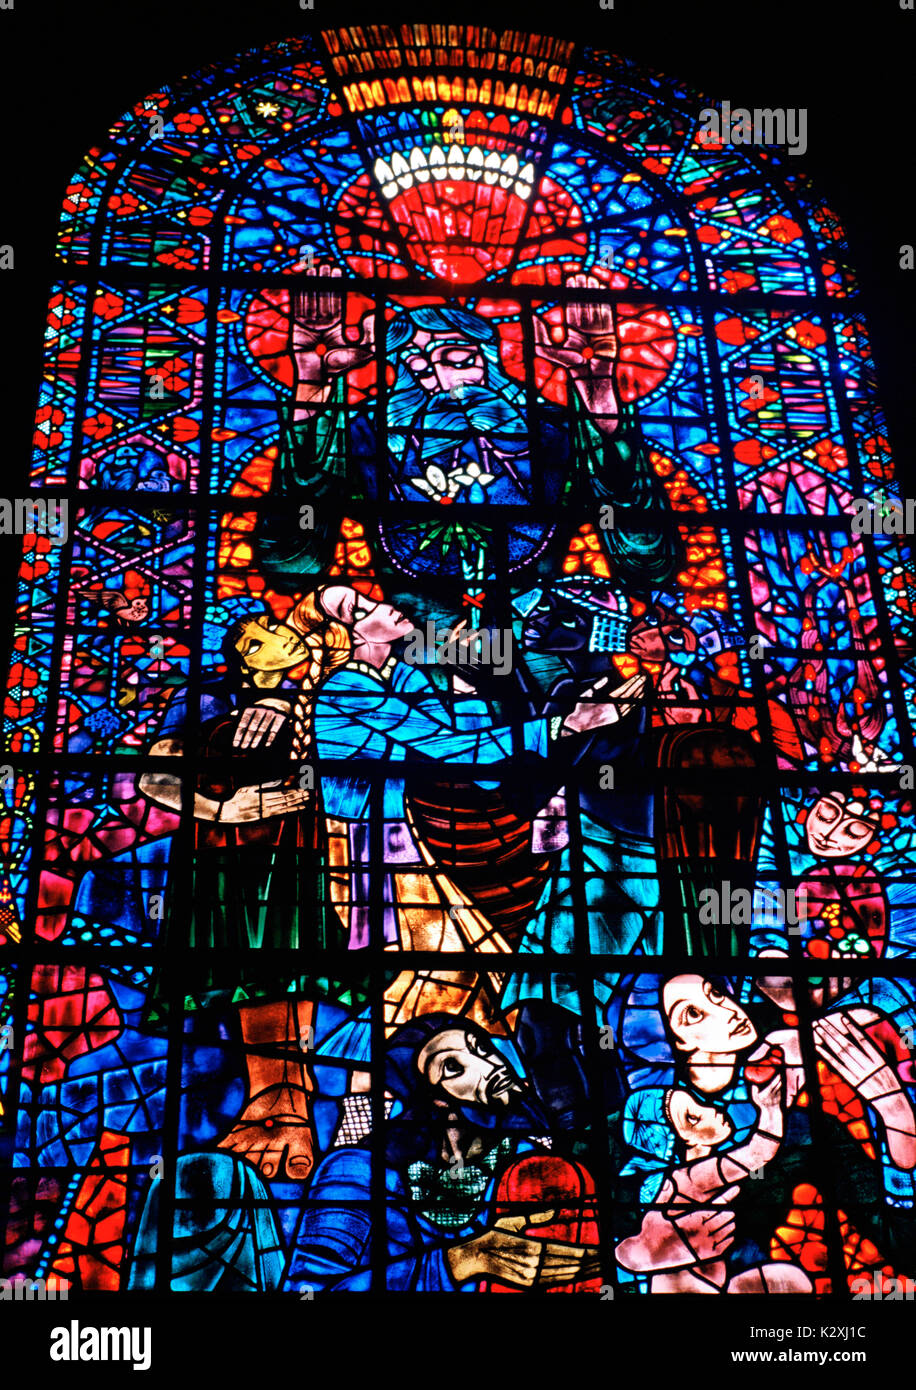 Finestra di pace da bossanyi nella cattedrale di Canterbury a Canterbury nel Kent in Inghilterra in Gran Bretagna nel Regno Unito Regno Unito Europa. il vetro macchiato arte Foto Stock